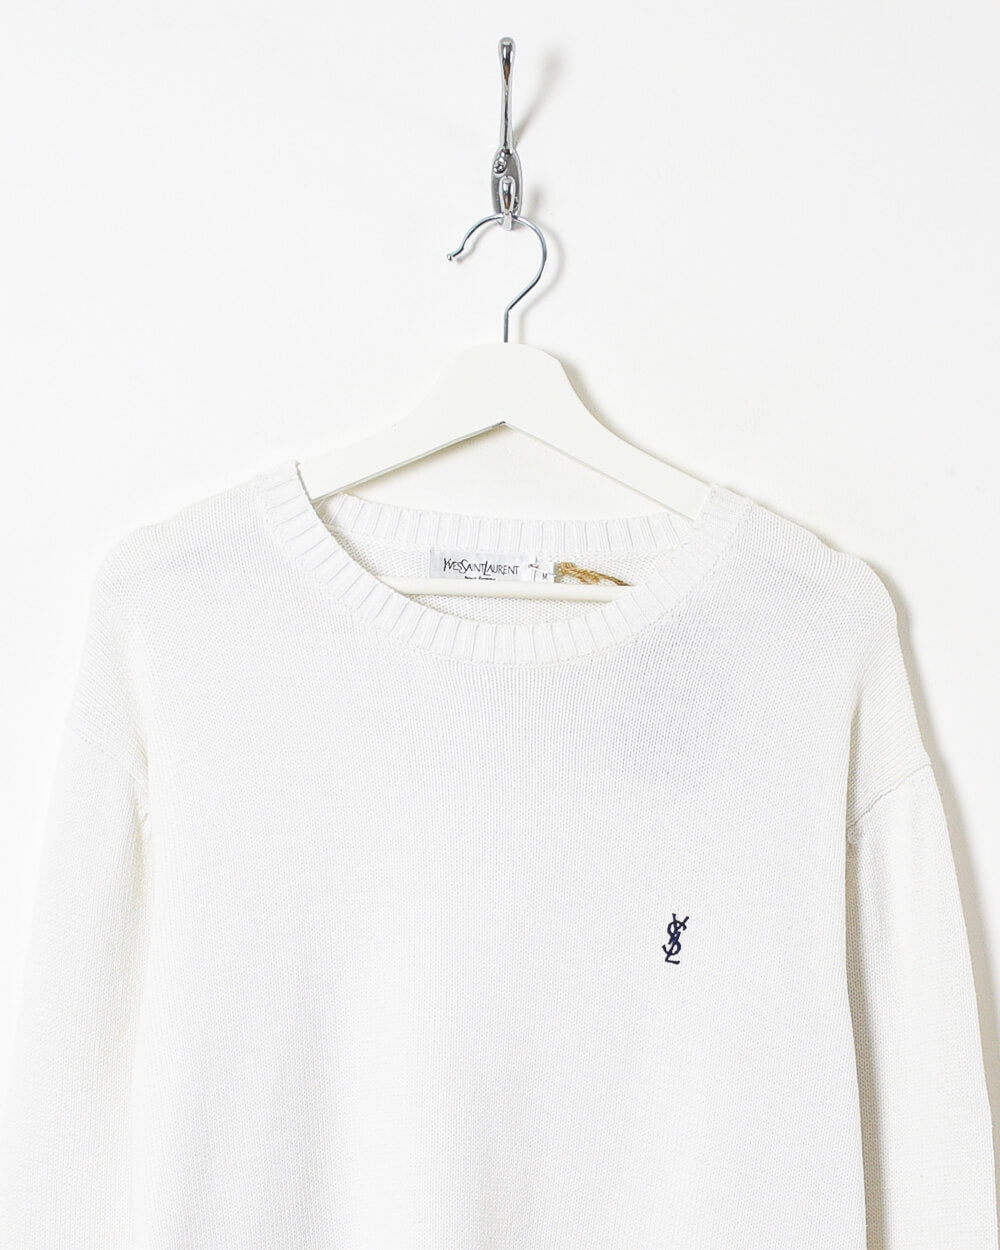 White Yves Saint Laurent Knitted Sweatshirt - Medium